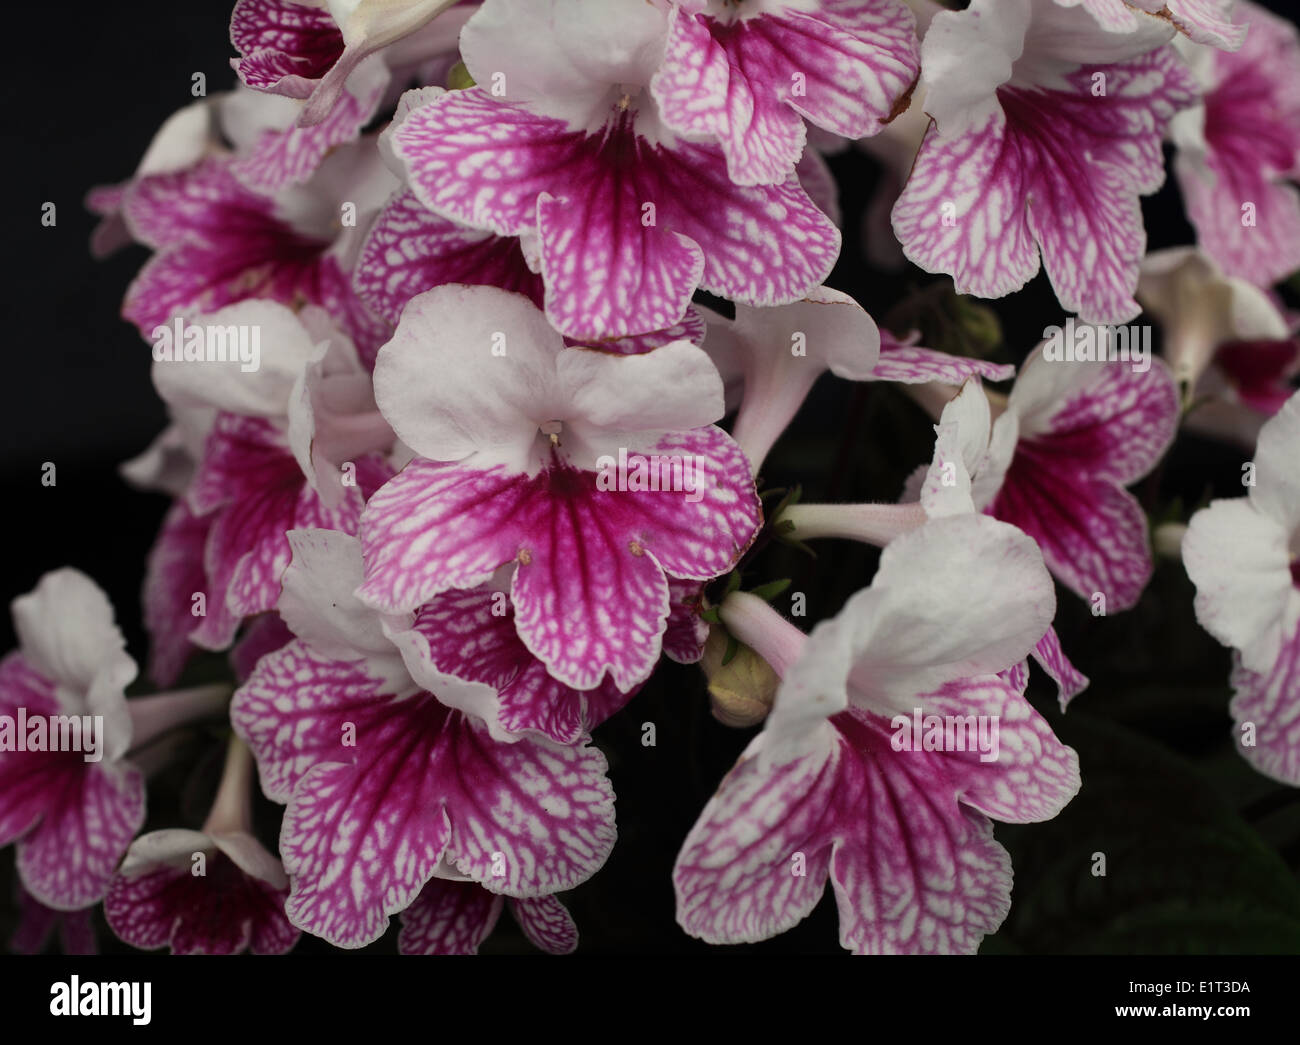 Streptocarpus 'Pink Leyla' close up of flower Stock Photo